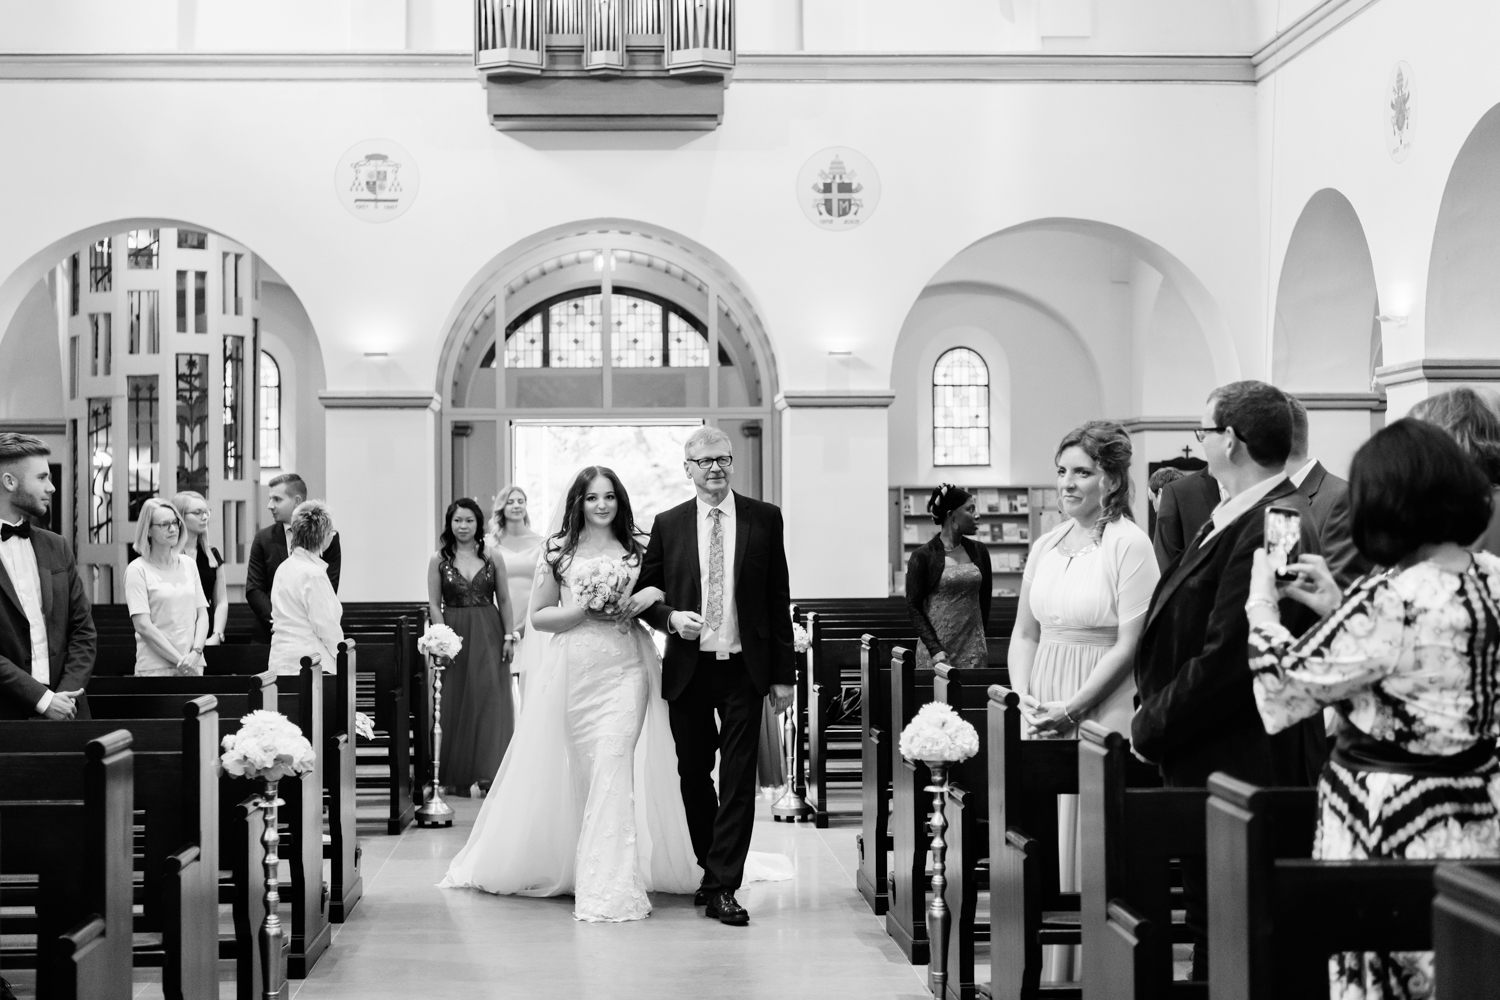 Hochzeitsfotograf Rocha Studio Osnabrück - Hochzeitsreportage und kirchliche Trauung von Laura & Claudio in Osnabrück